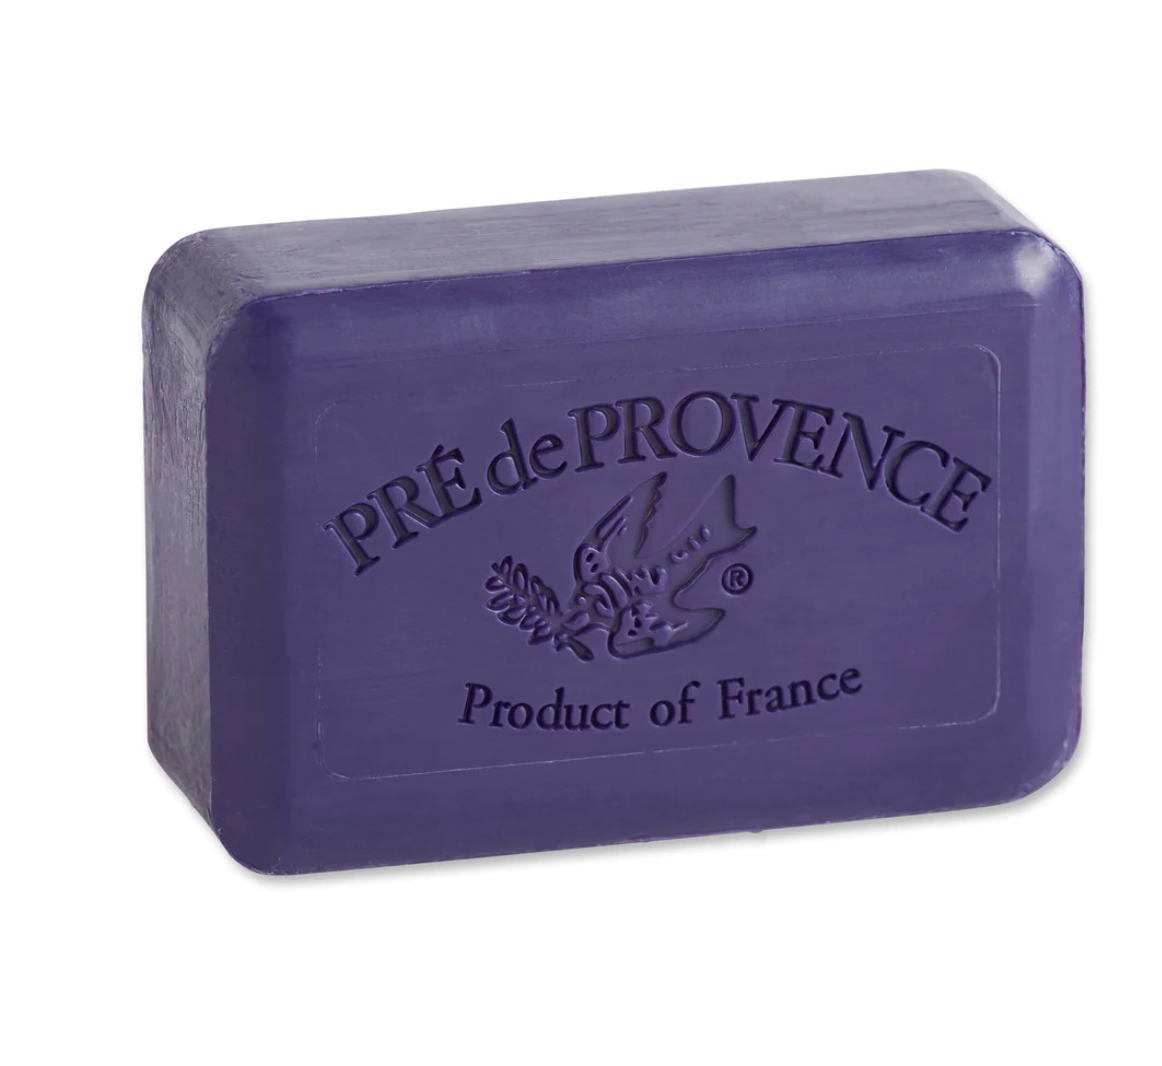 Black Currant soap bar by Pré de Provence